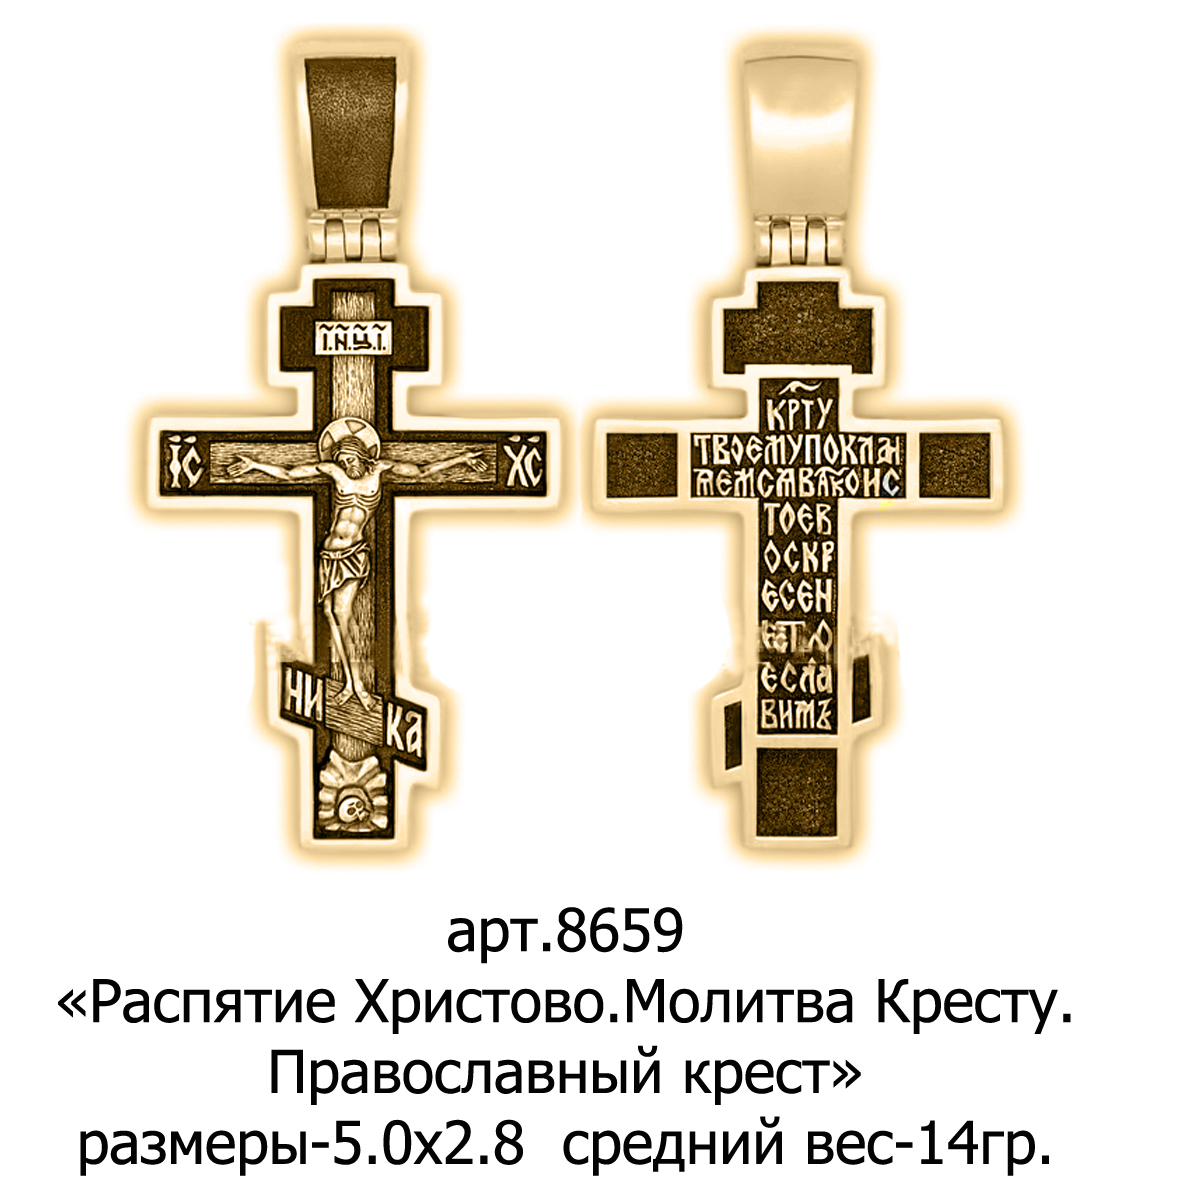 Православный сайт ювелирные изделия. Православный крест. Православный крестик. Формы православных крестов. Православие крест.